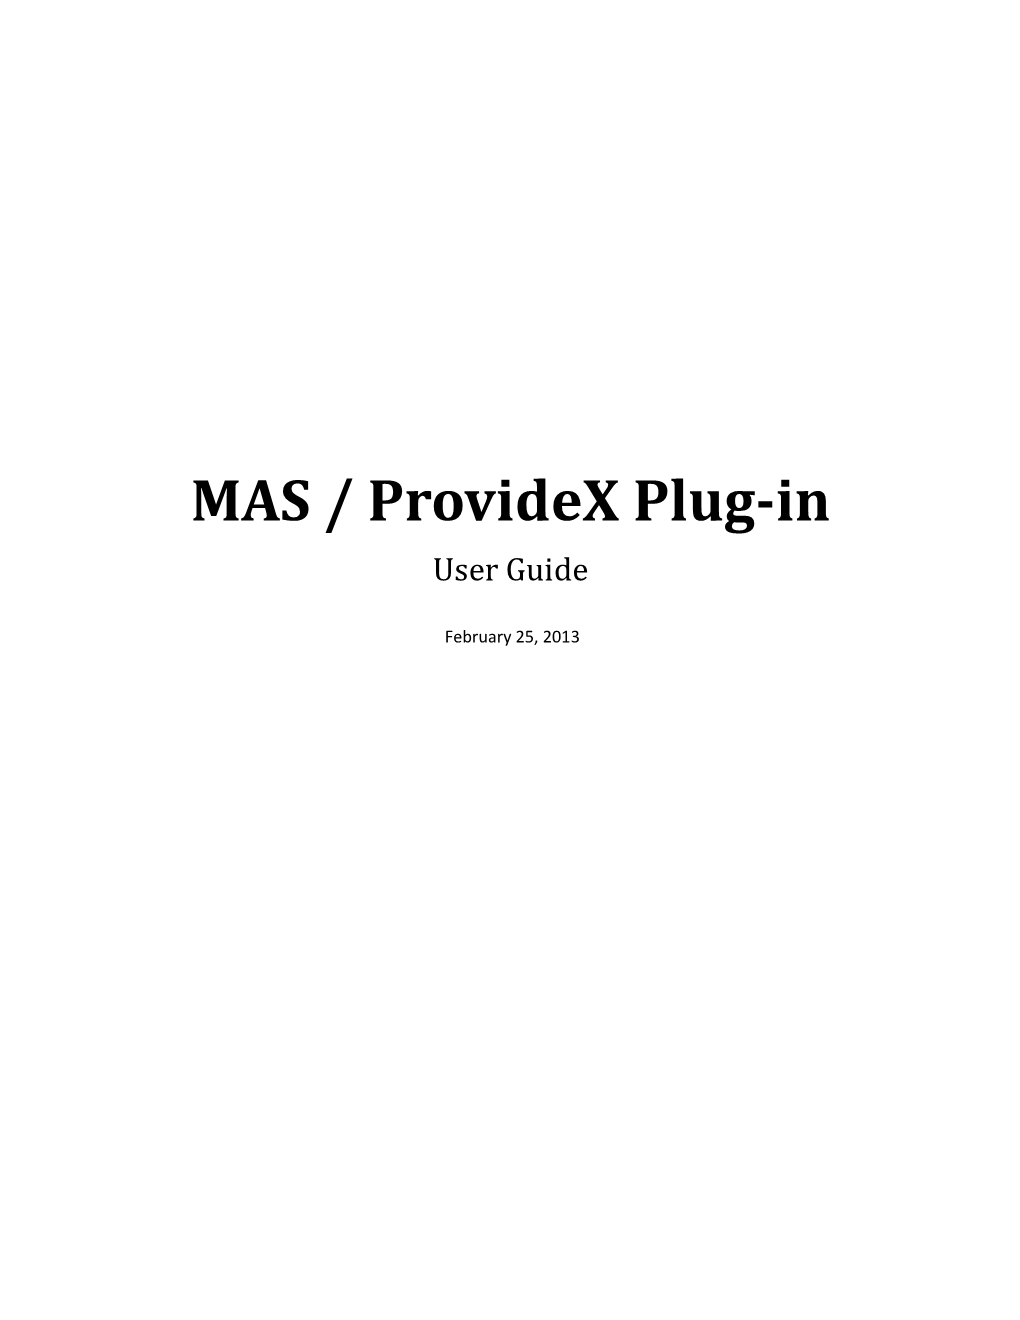 MAS / Providex Plug-In